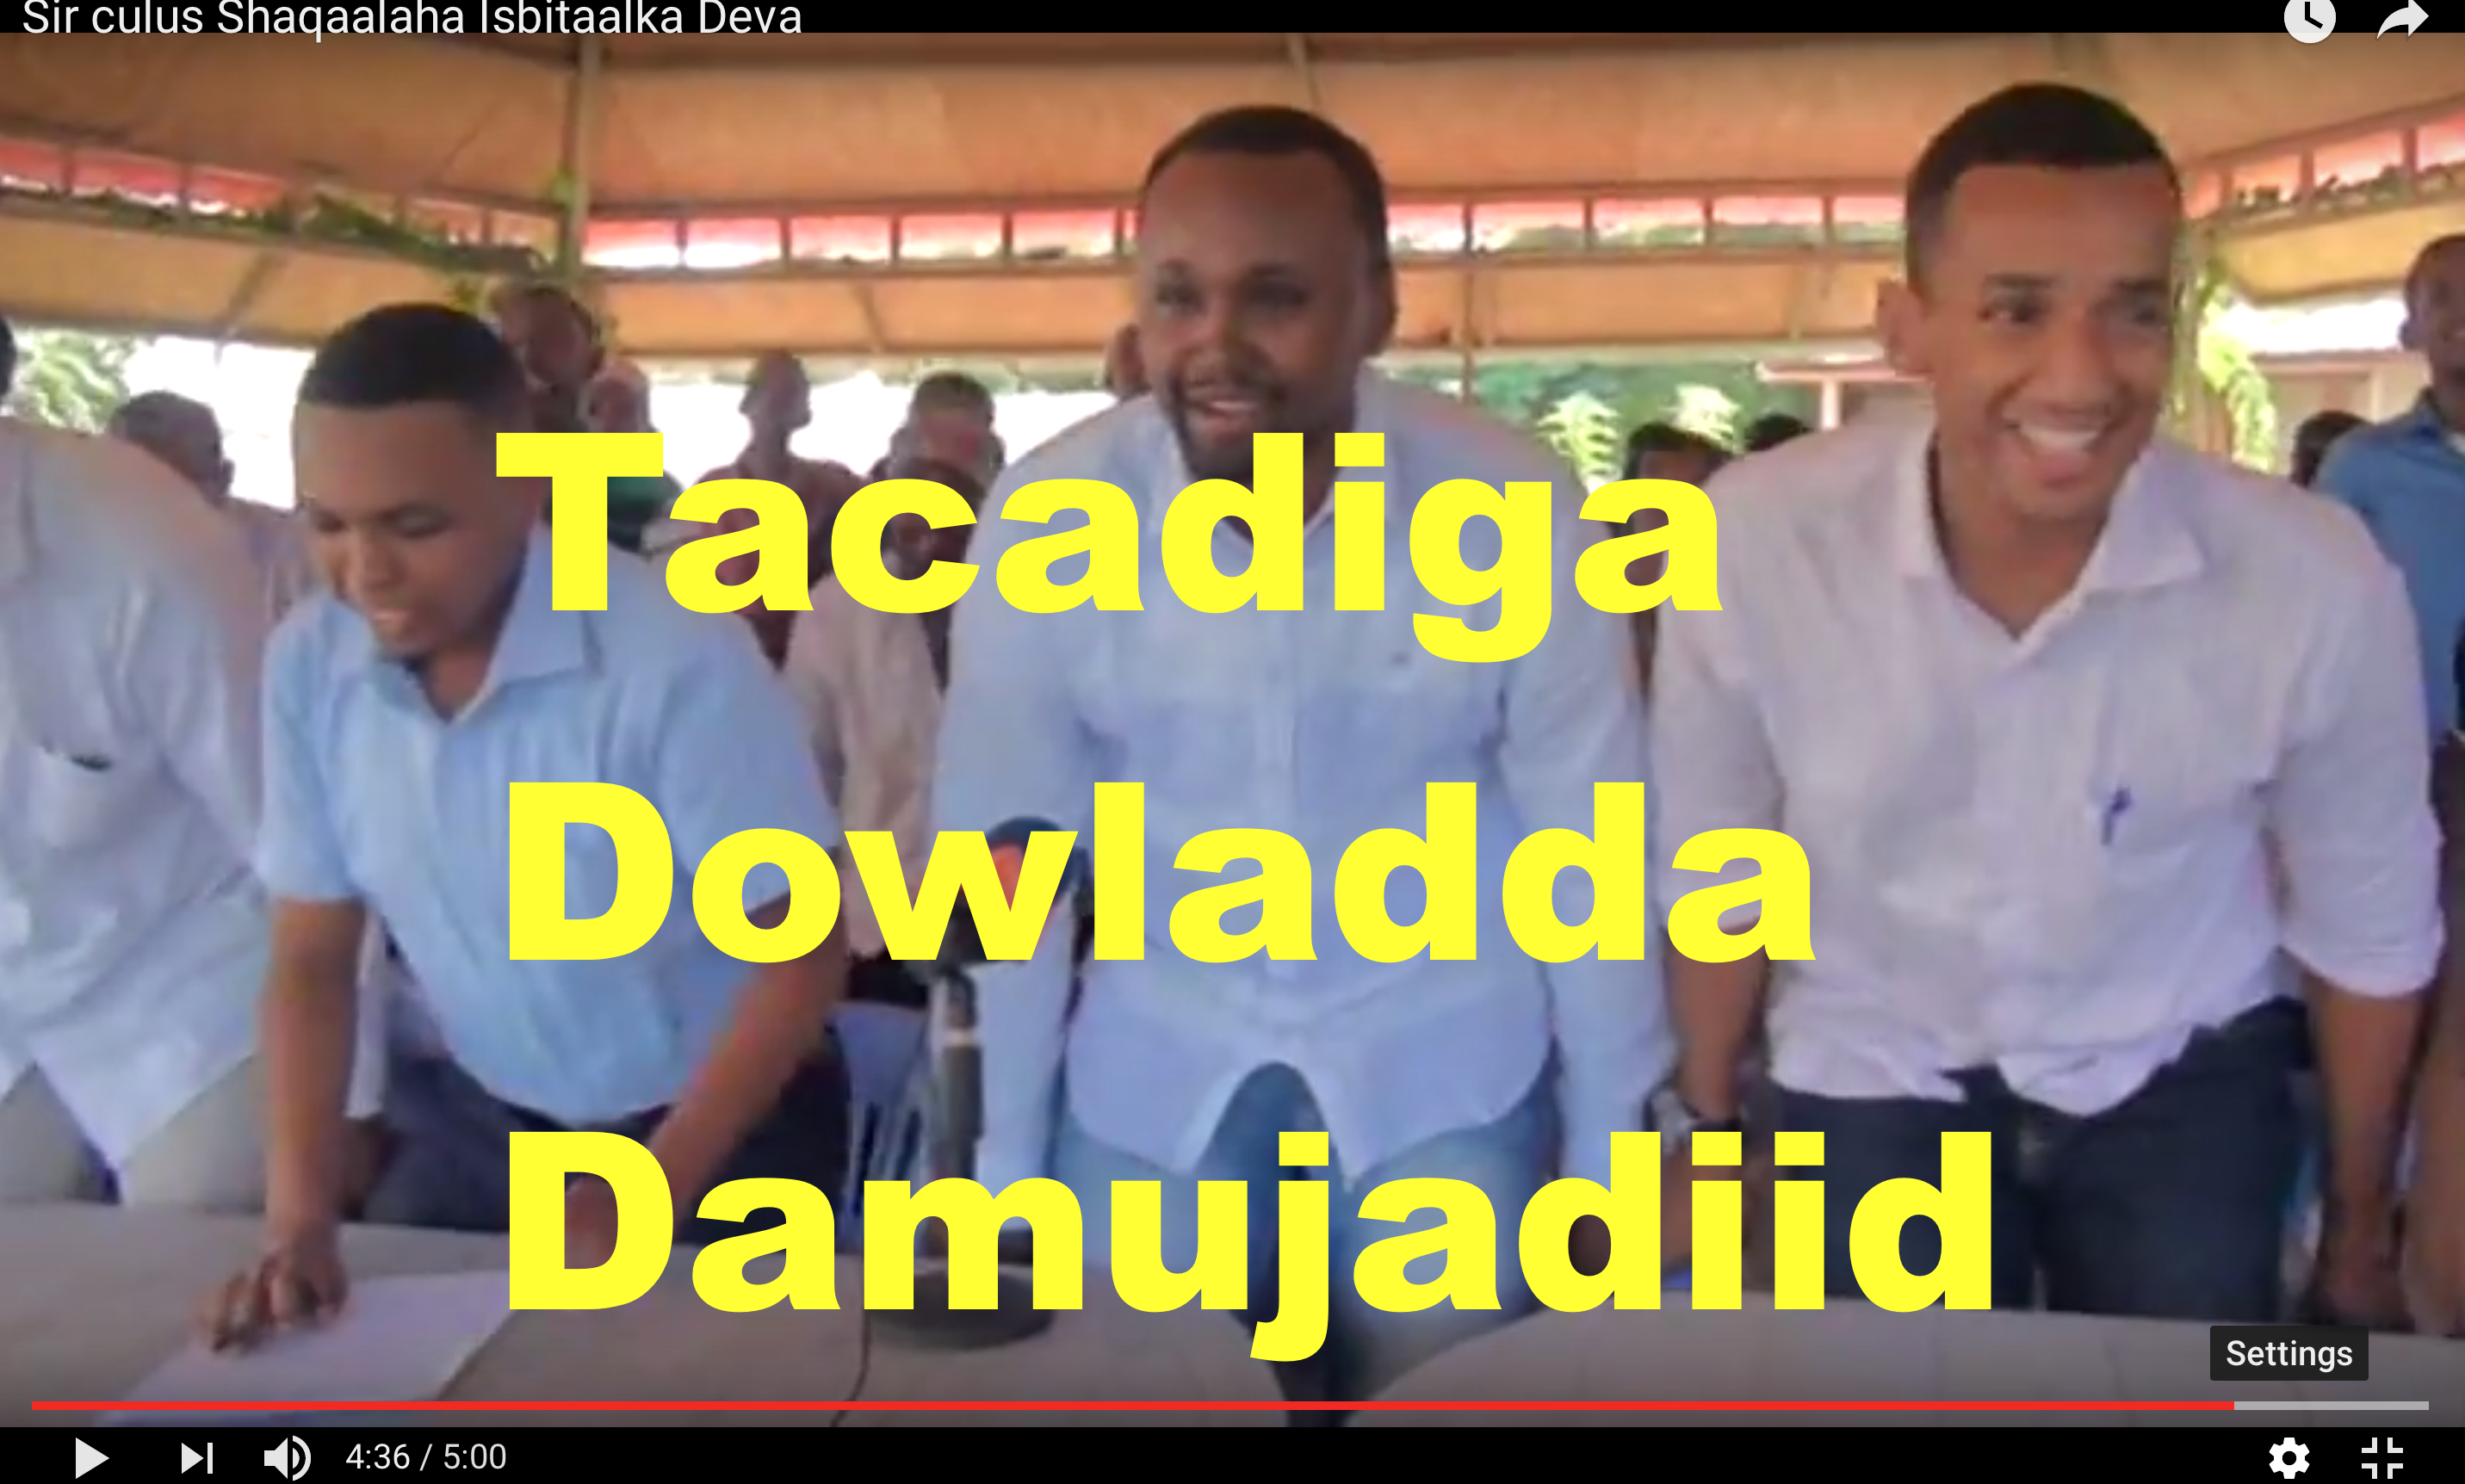 [Daawo] tacadigga Dowladda Damujadiid ku kacday - shaqaalahii Deva Hospital iyo Bukaanadii laga eryay?